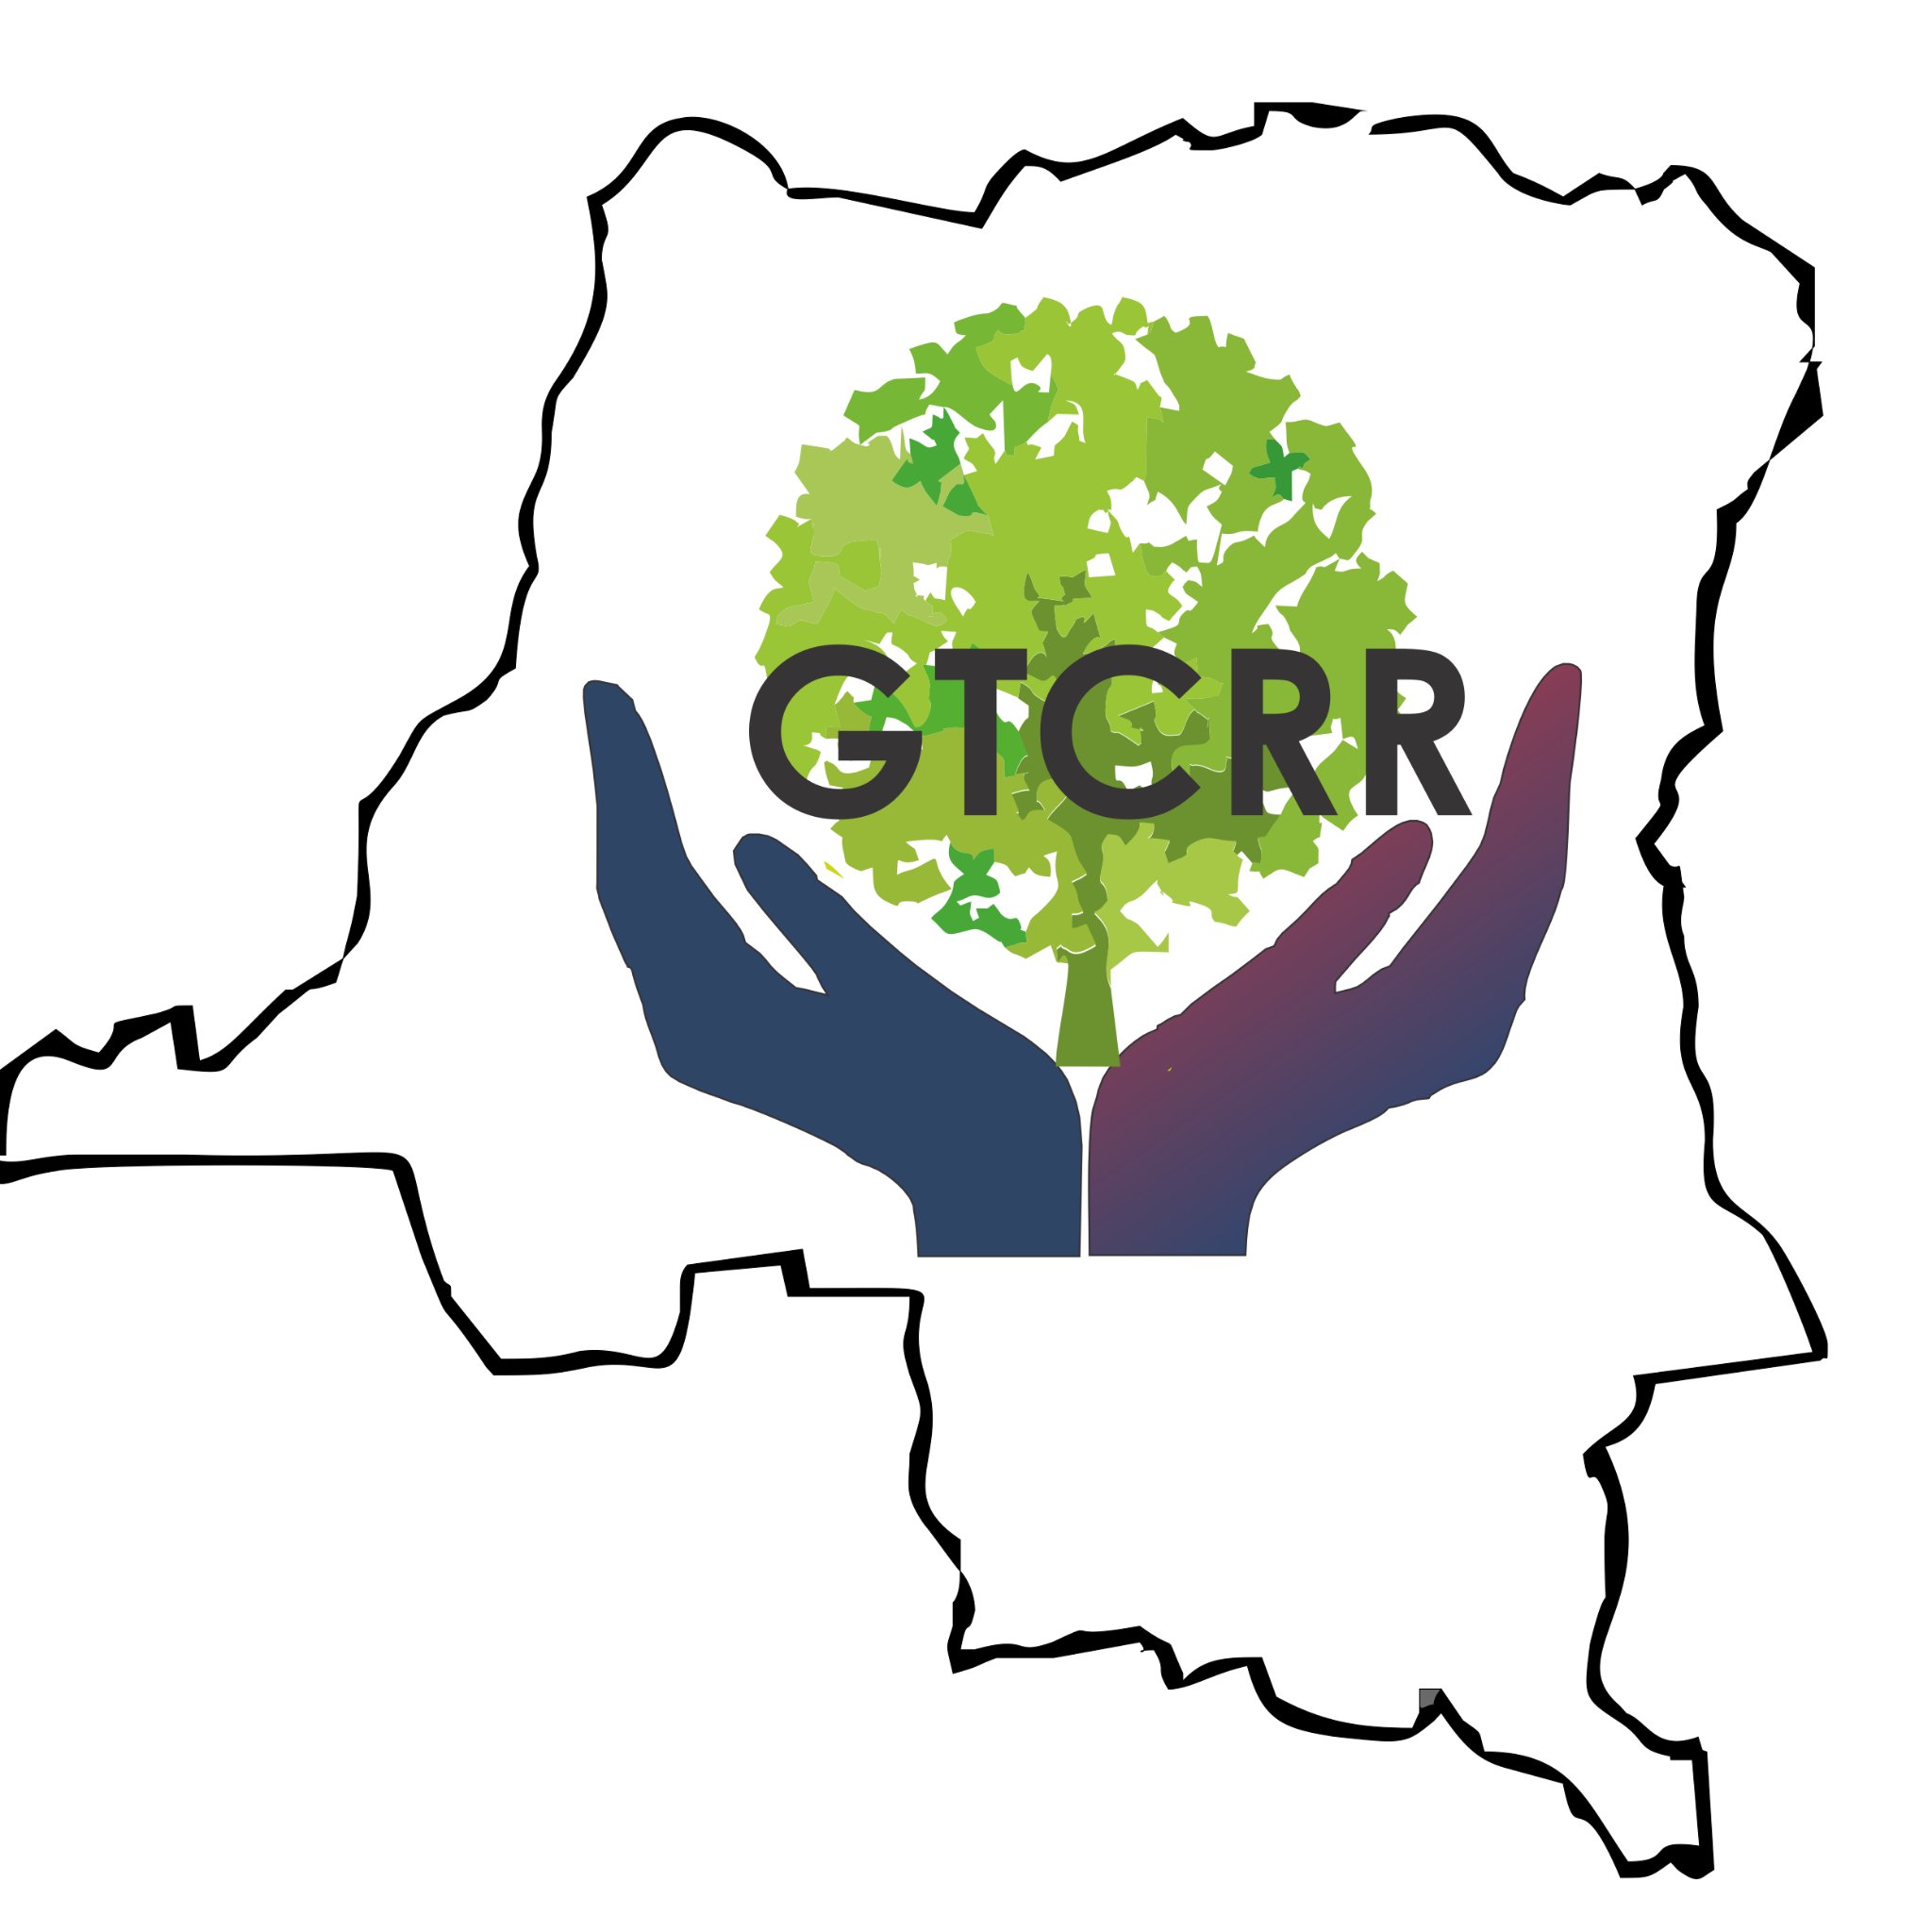 Le GTCRR a  pour mission d’assurer le respect des droits et intérêts des communautés locales et peuples autochtones pygmées autour du processus REDD+